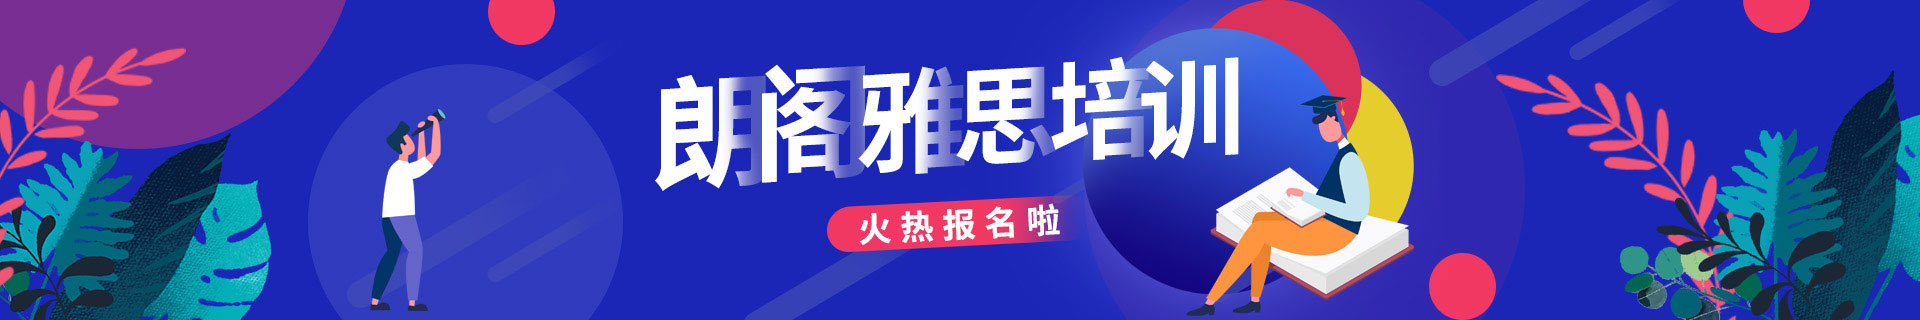 广州天河区朗阁教育培训机构